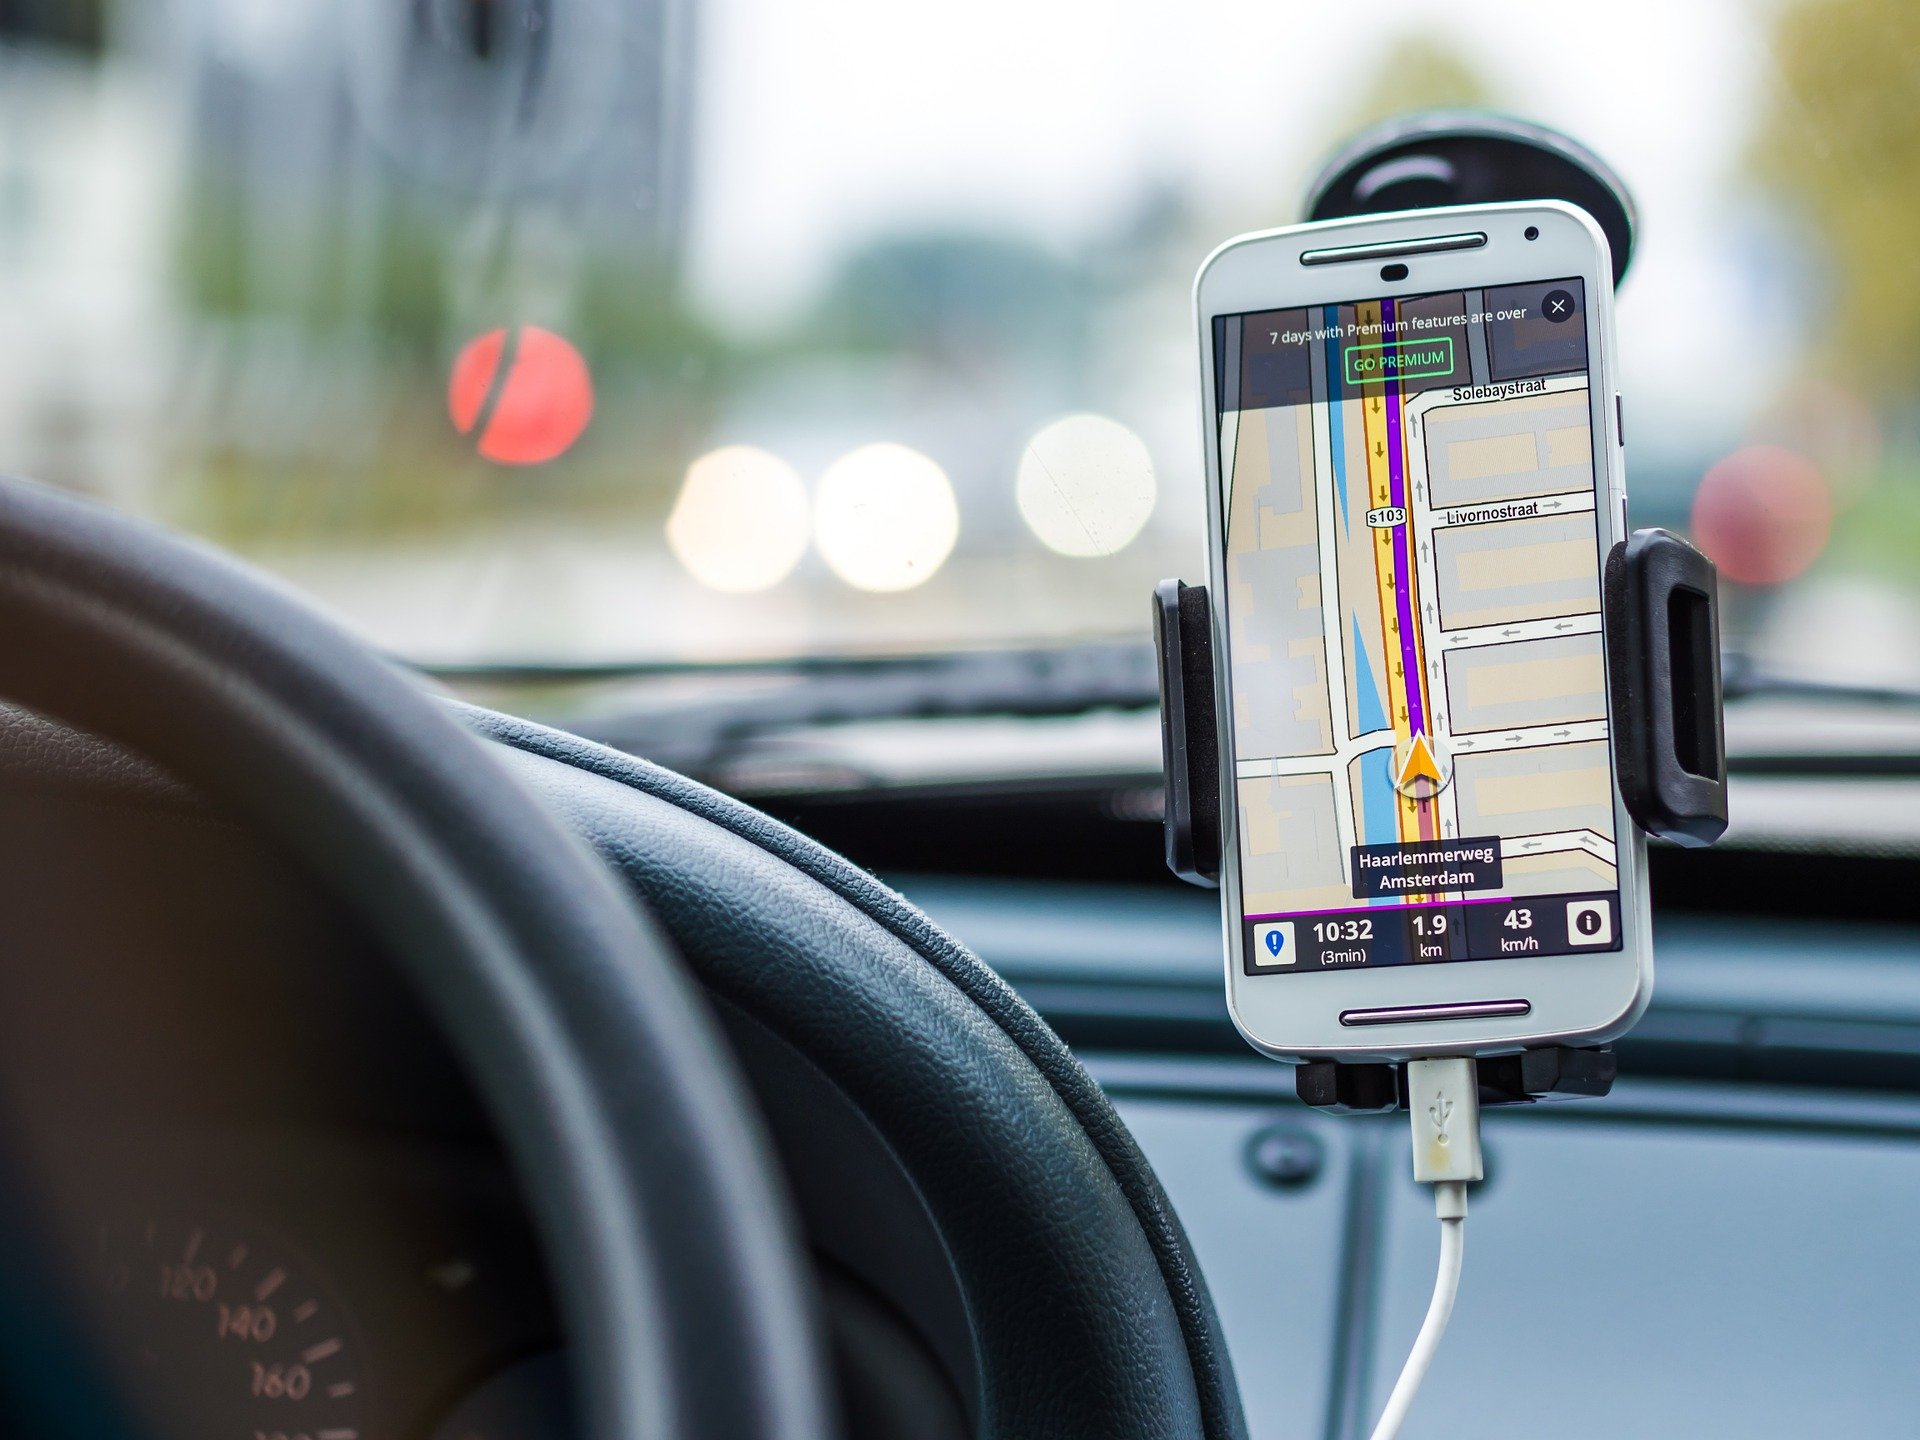 Iphoneの音楽を車内で楽しめるfmトランスミッターとは 機能や選び方を解説 テックキャンプ ブログ